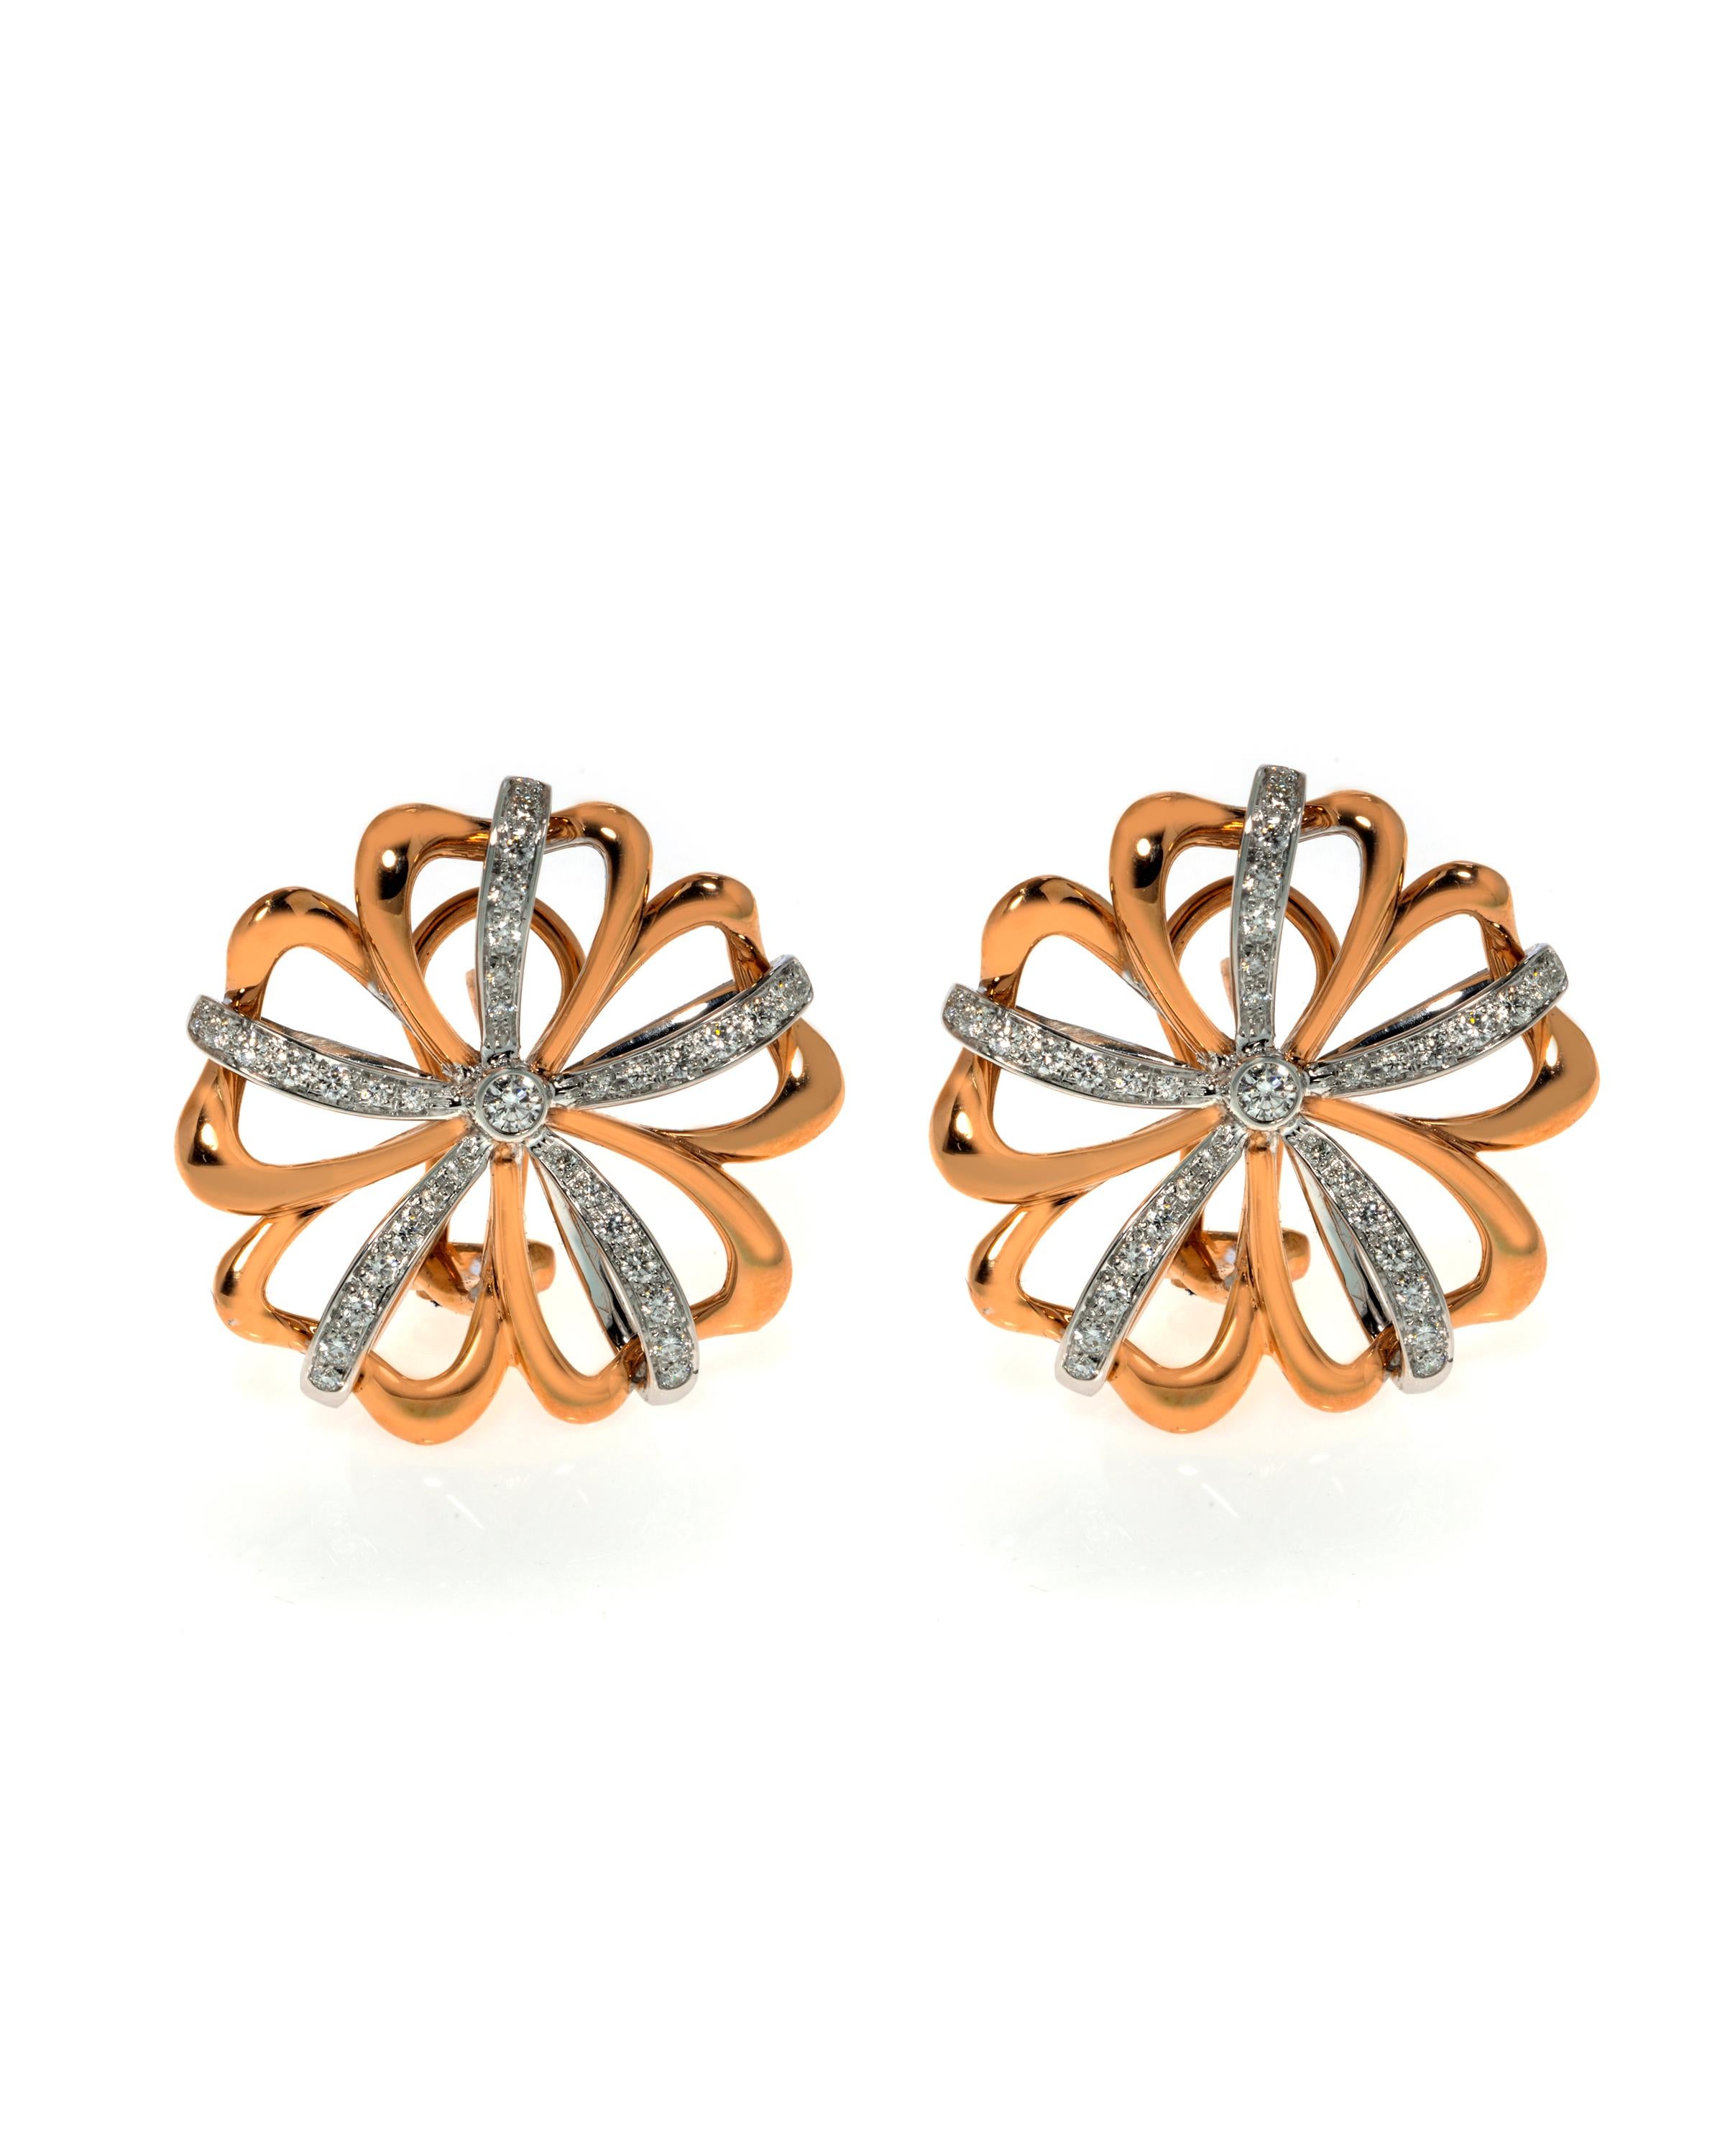 Dieses wunderschöne Paar Ohrringe ist aus massivem 18-karätigem Rosé- und Weißgold gefertigt und hat die Form von wunderschönen Blumen. Das Gesamtgewicht der Diamanten des Paares beträgt 0,78 Karat mit VVS-Reinheit und G-Farbe. Jeder Ohrring misst